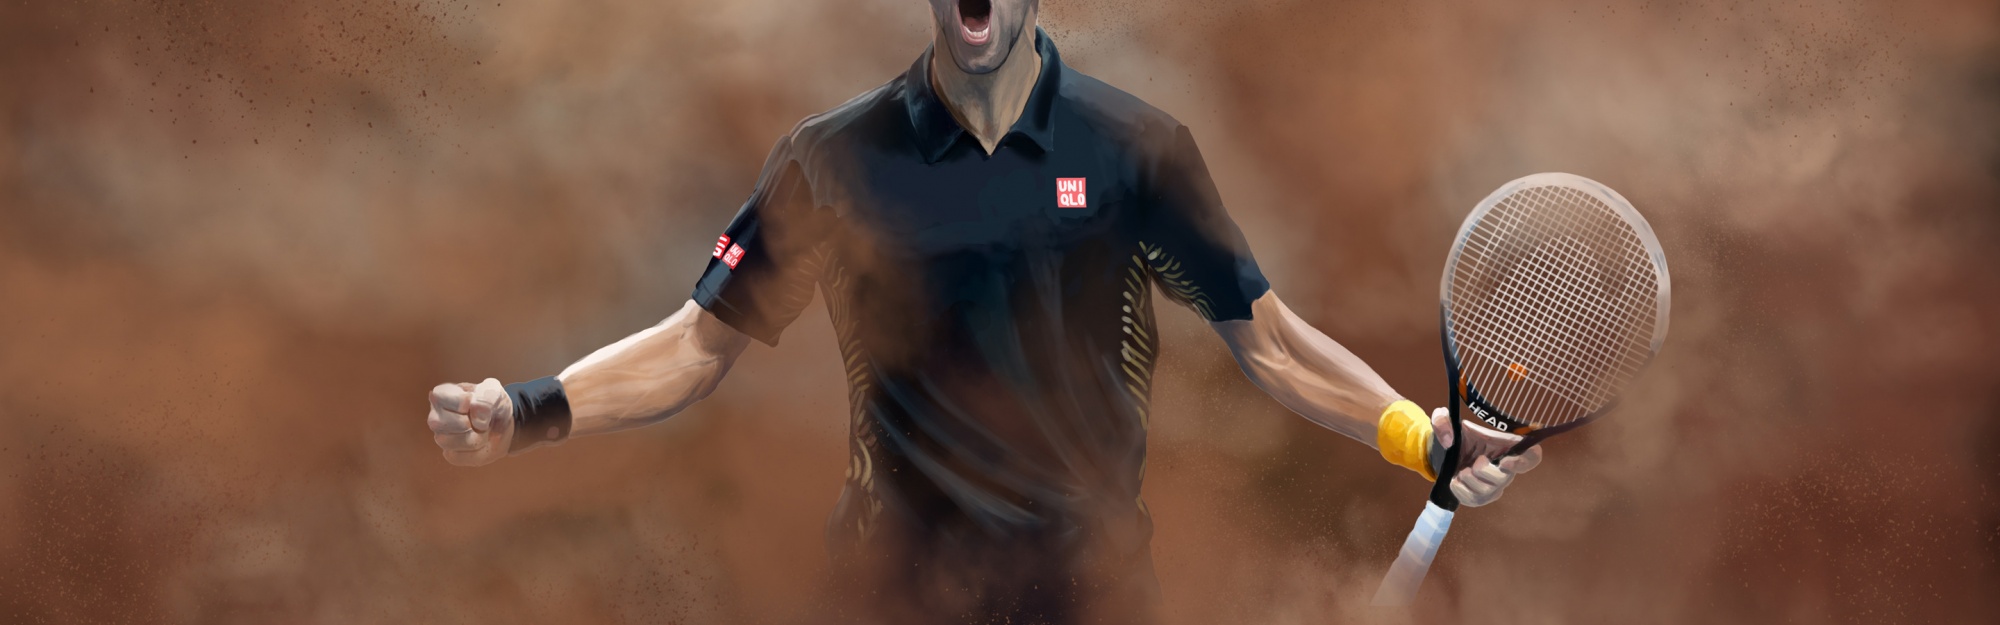 Novak Djokovic Fan Art By Urosh1991